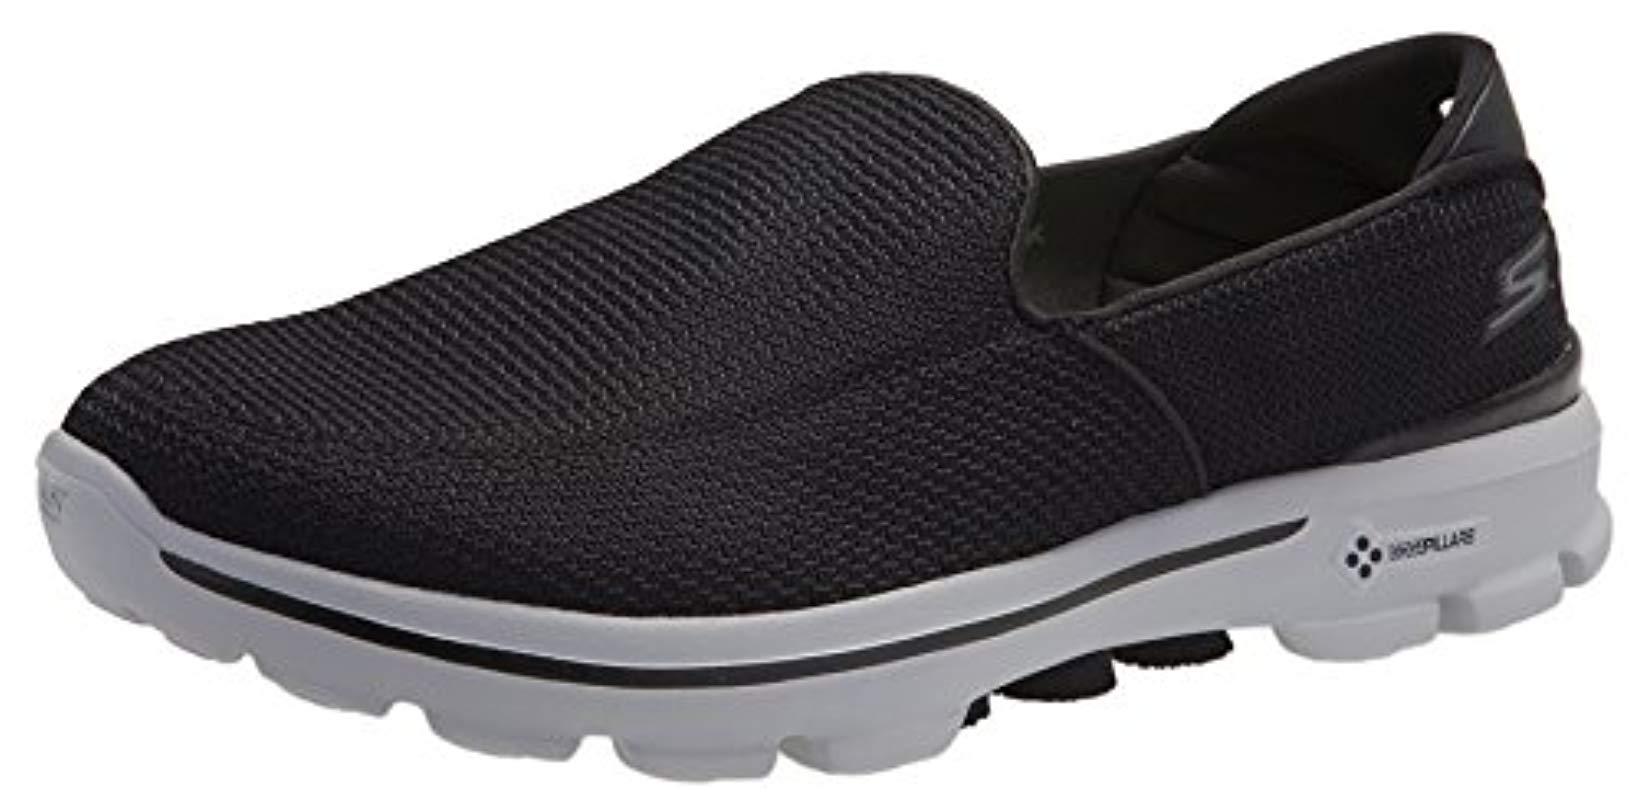 Skechers Performance Go Walk 3 Slip-on Walking Shoe in Black/Grey ...